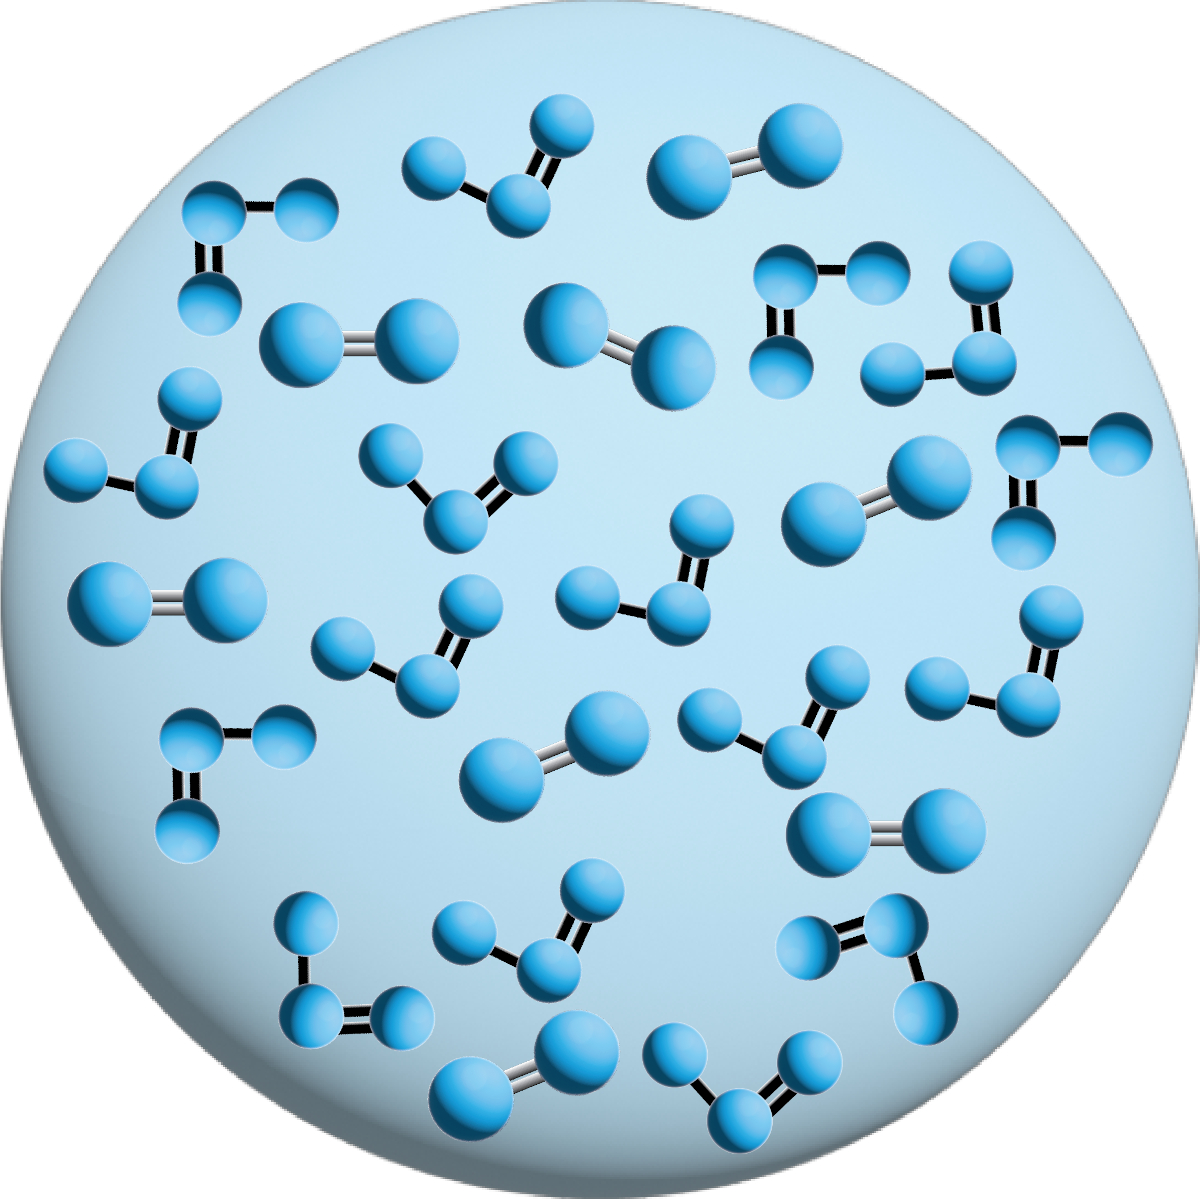 Ozone nanobubble with oxygen and ozone